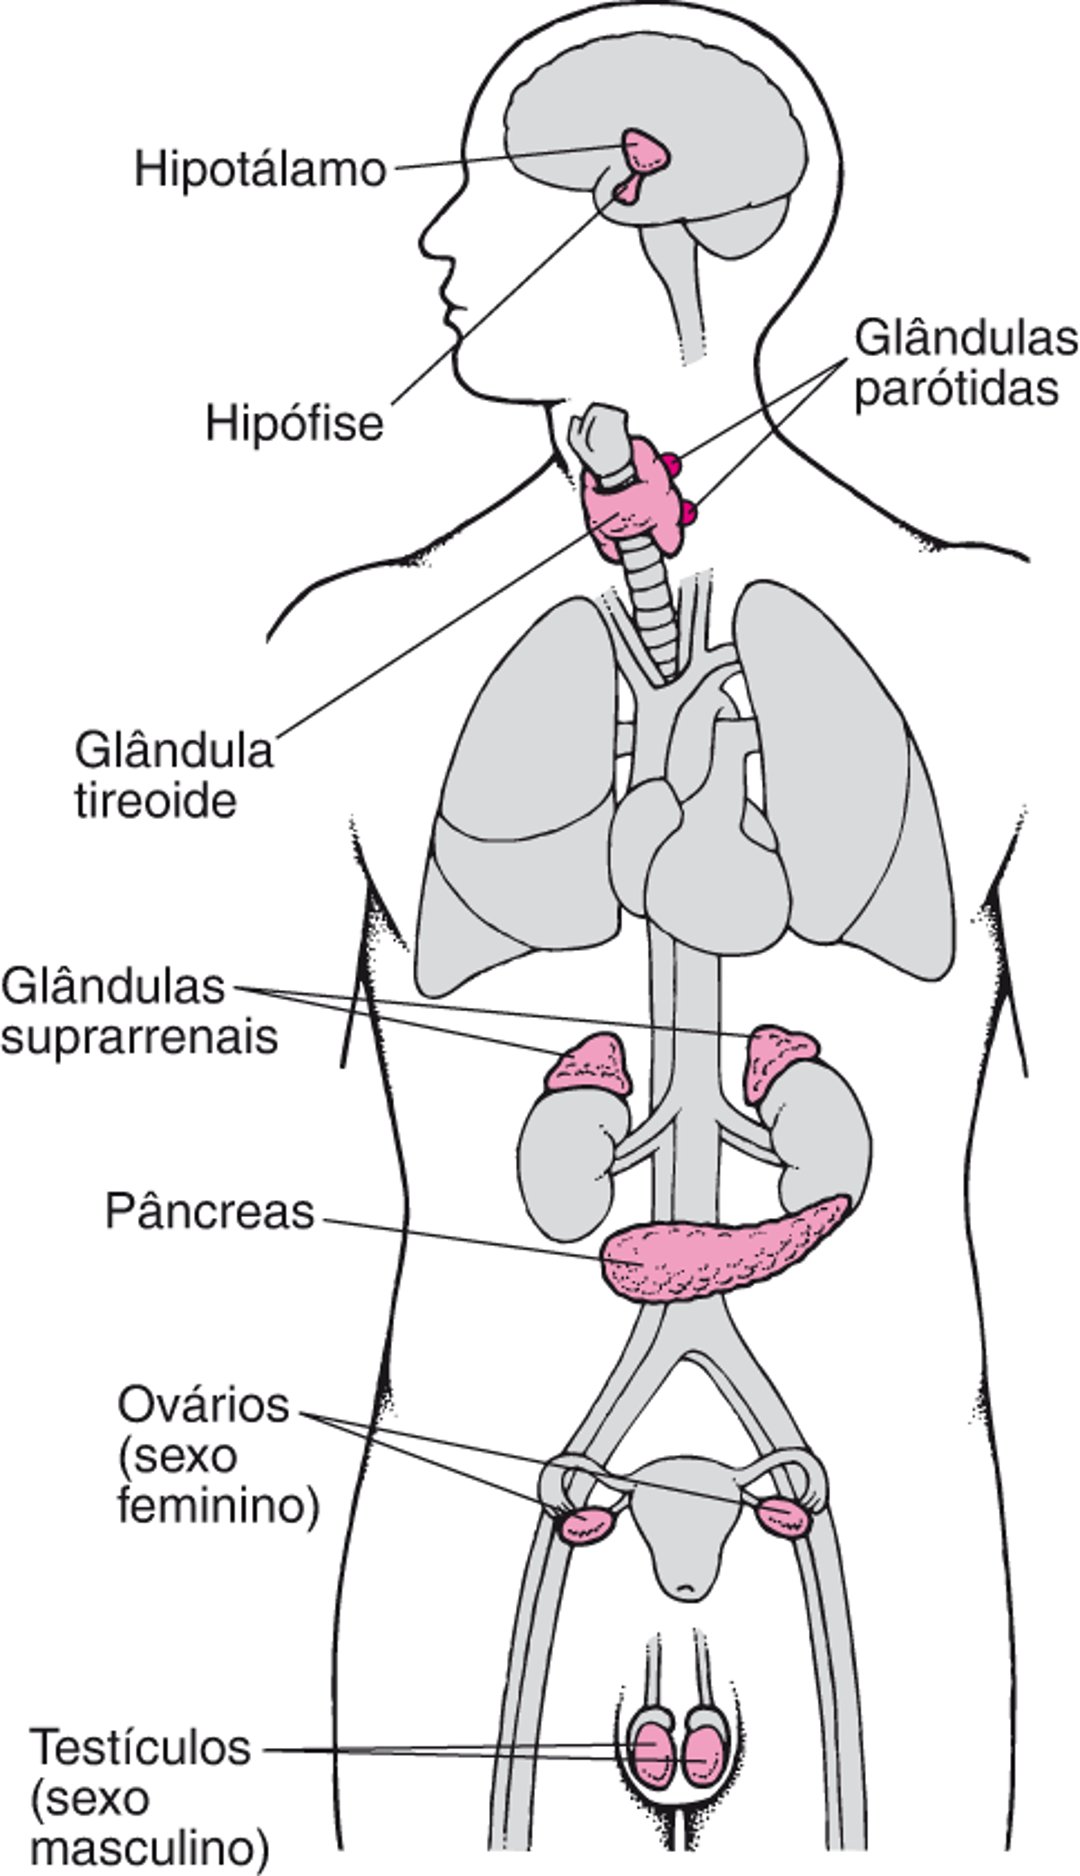 Principais glândulas endócrinas